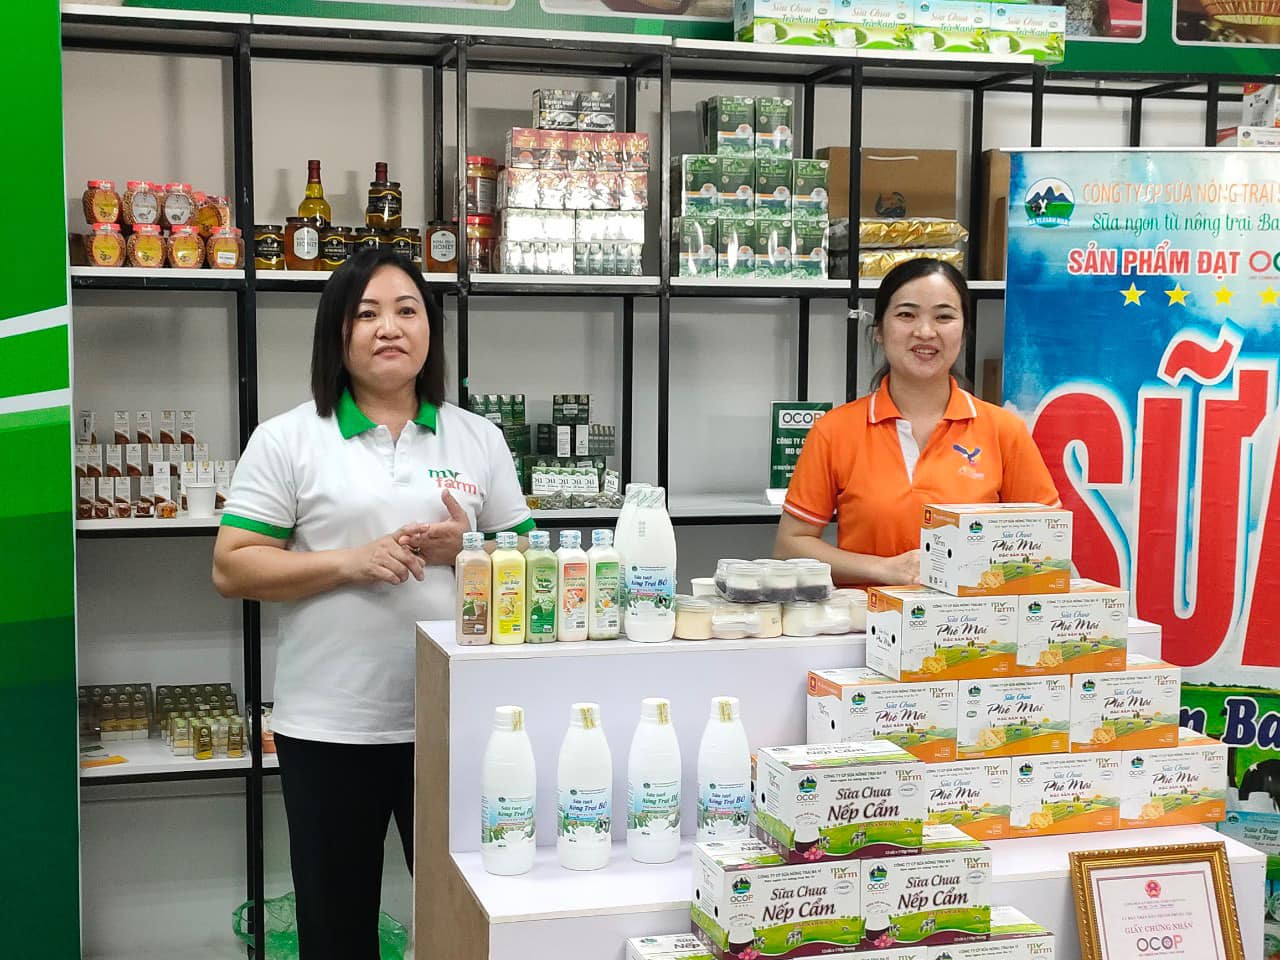 Thời gian qua, Hà Nội đã tổ chức nhiều chương trình hiệu quả, thiết thực giúp hỗ trợ tiêu thụ sản phẩm OCOP. Nguồn: Internet